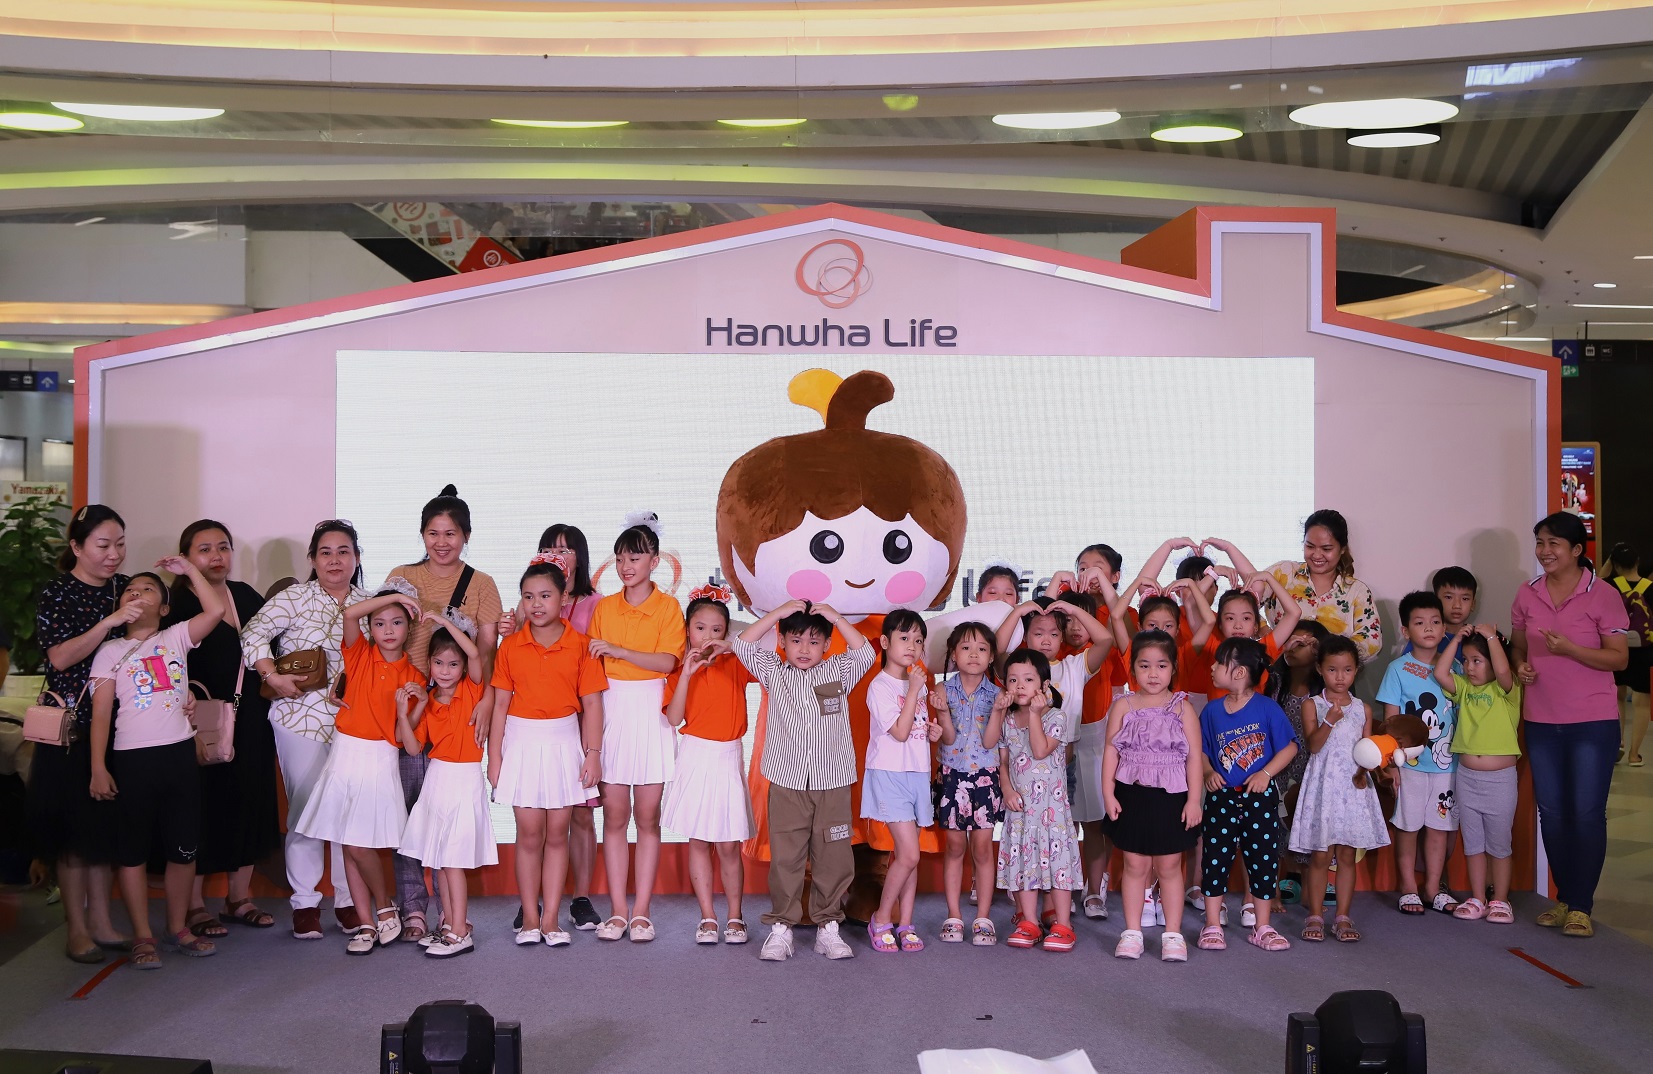 Ngày 7/10 qua, tại trung tâm thương mại Vạn Hạnh Mall, sự kiện “Cái ôm ấm áp” đã thu hút sự tham gia của hơn 400 gia đình. Sự kiện này nằm trong khuôn khổ dự án bảo vệ trẻ em “Cái ôm ấm áp” do Hanwha Life khởi xướng và tài trợ, với sự hợp tác triển khai của tổ chức ChildFund Hàn Quốc.